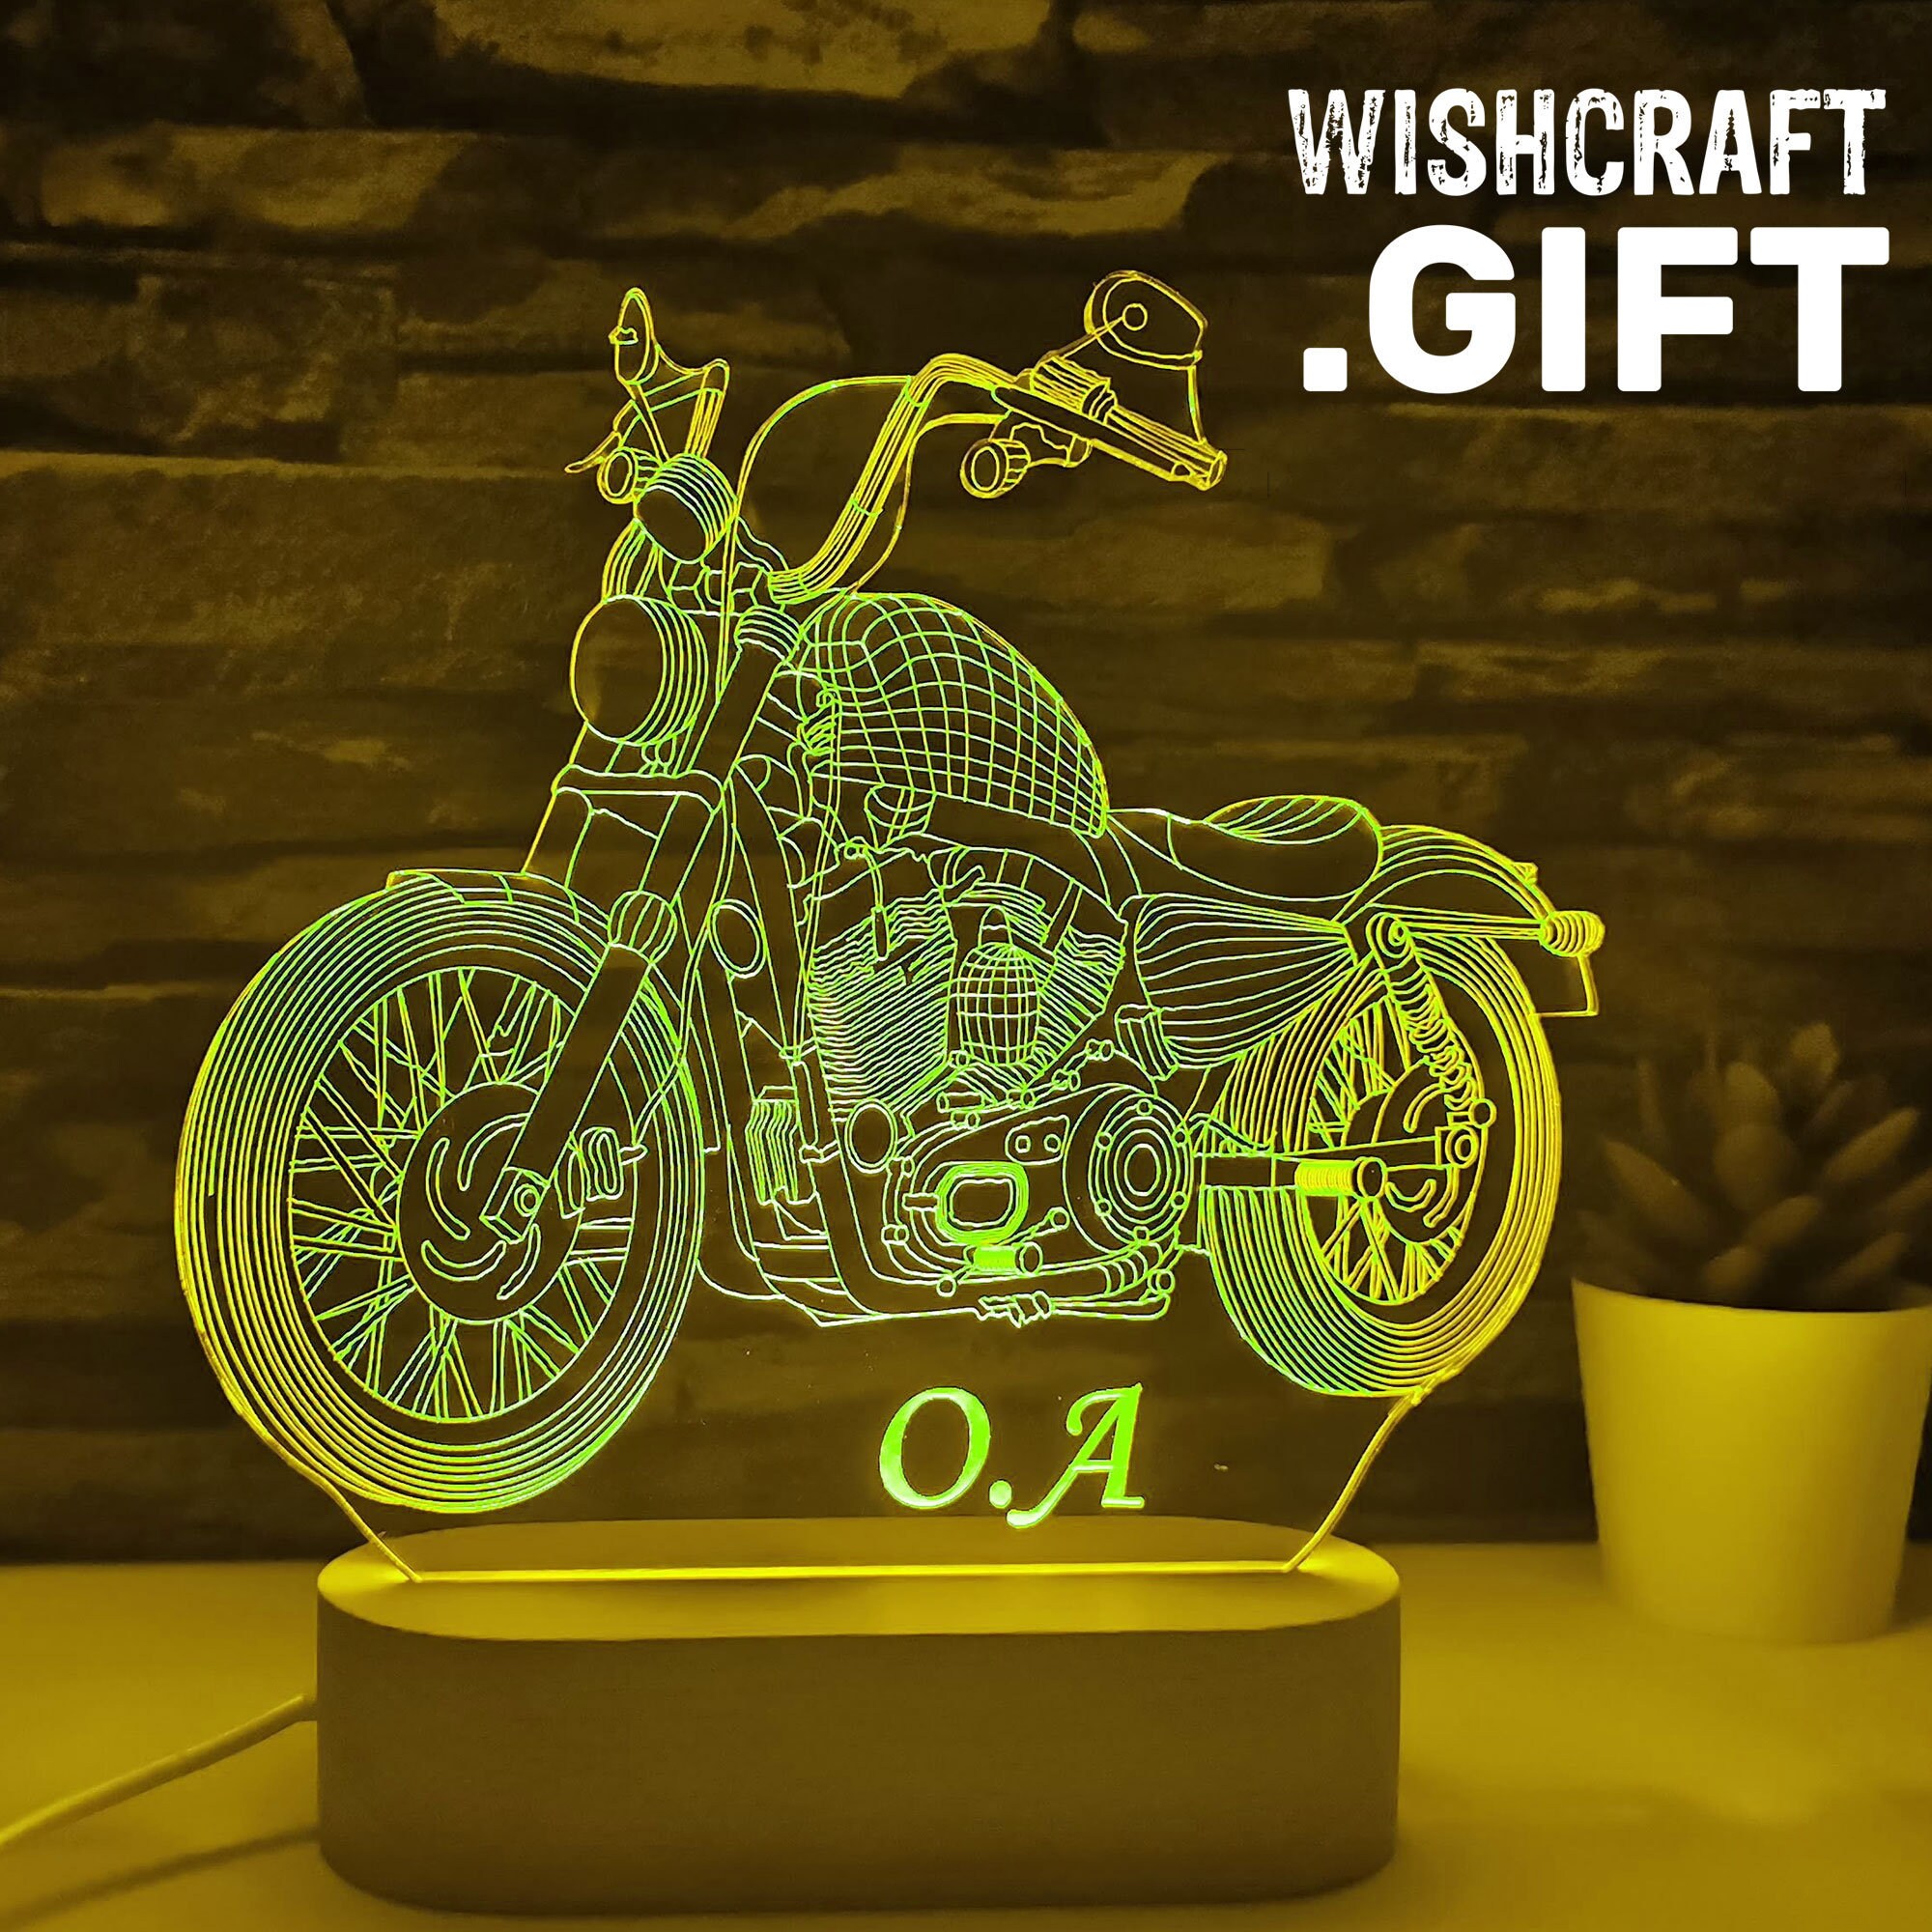 Motorrad-Liebhaber-Geschenk, Motorrad-LED-Lampe, Motorradfahrer